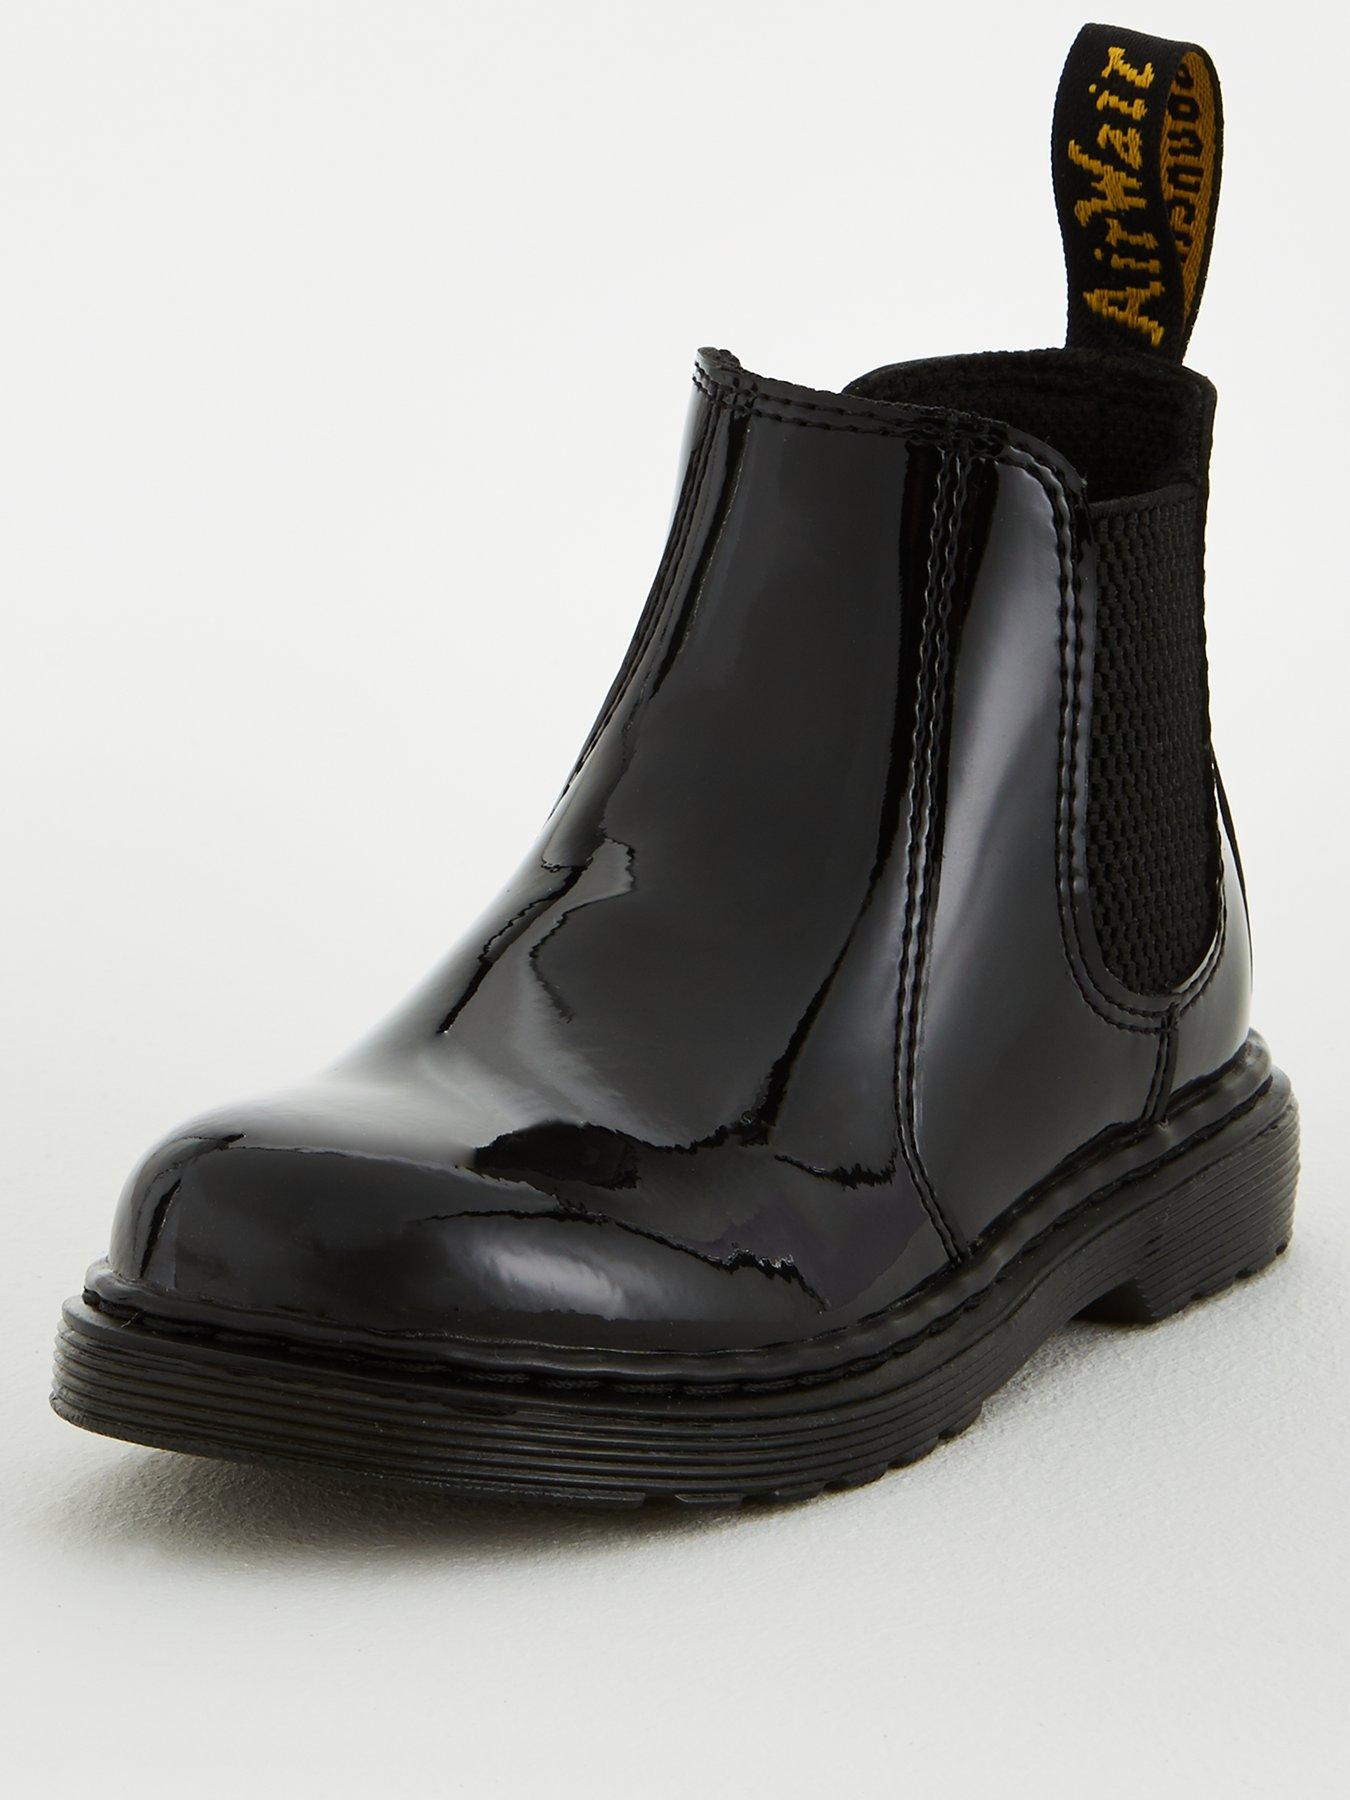 dr martens banzai chelsea boots black patent